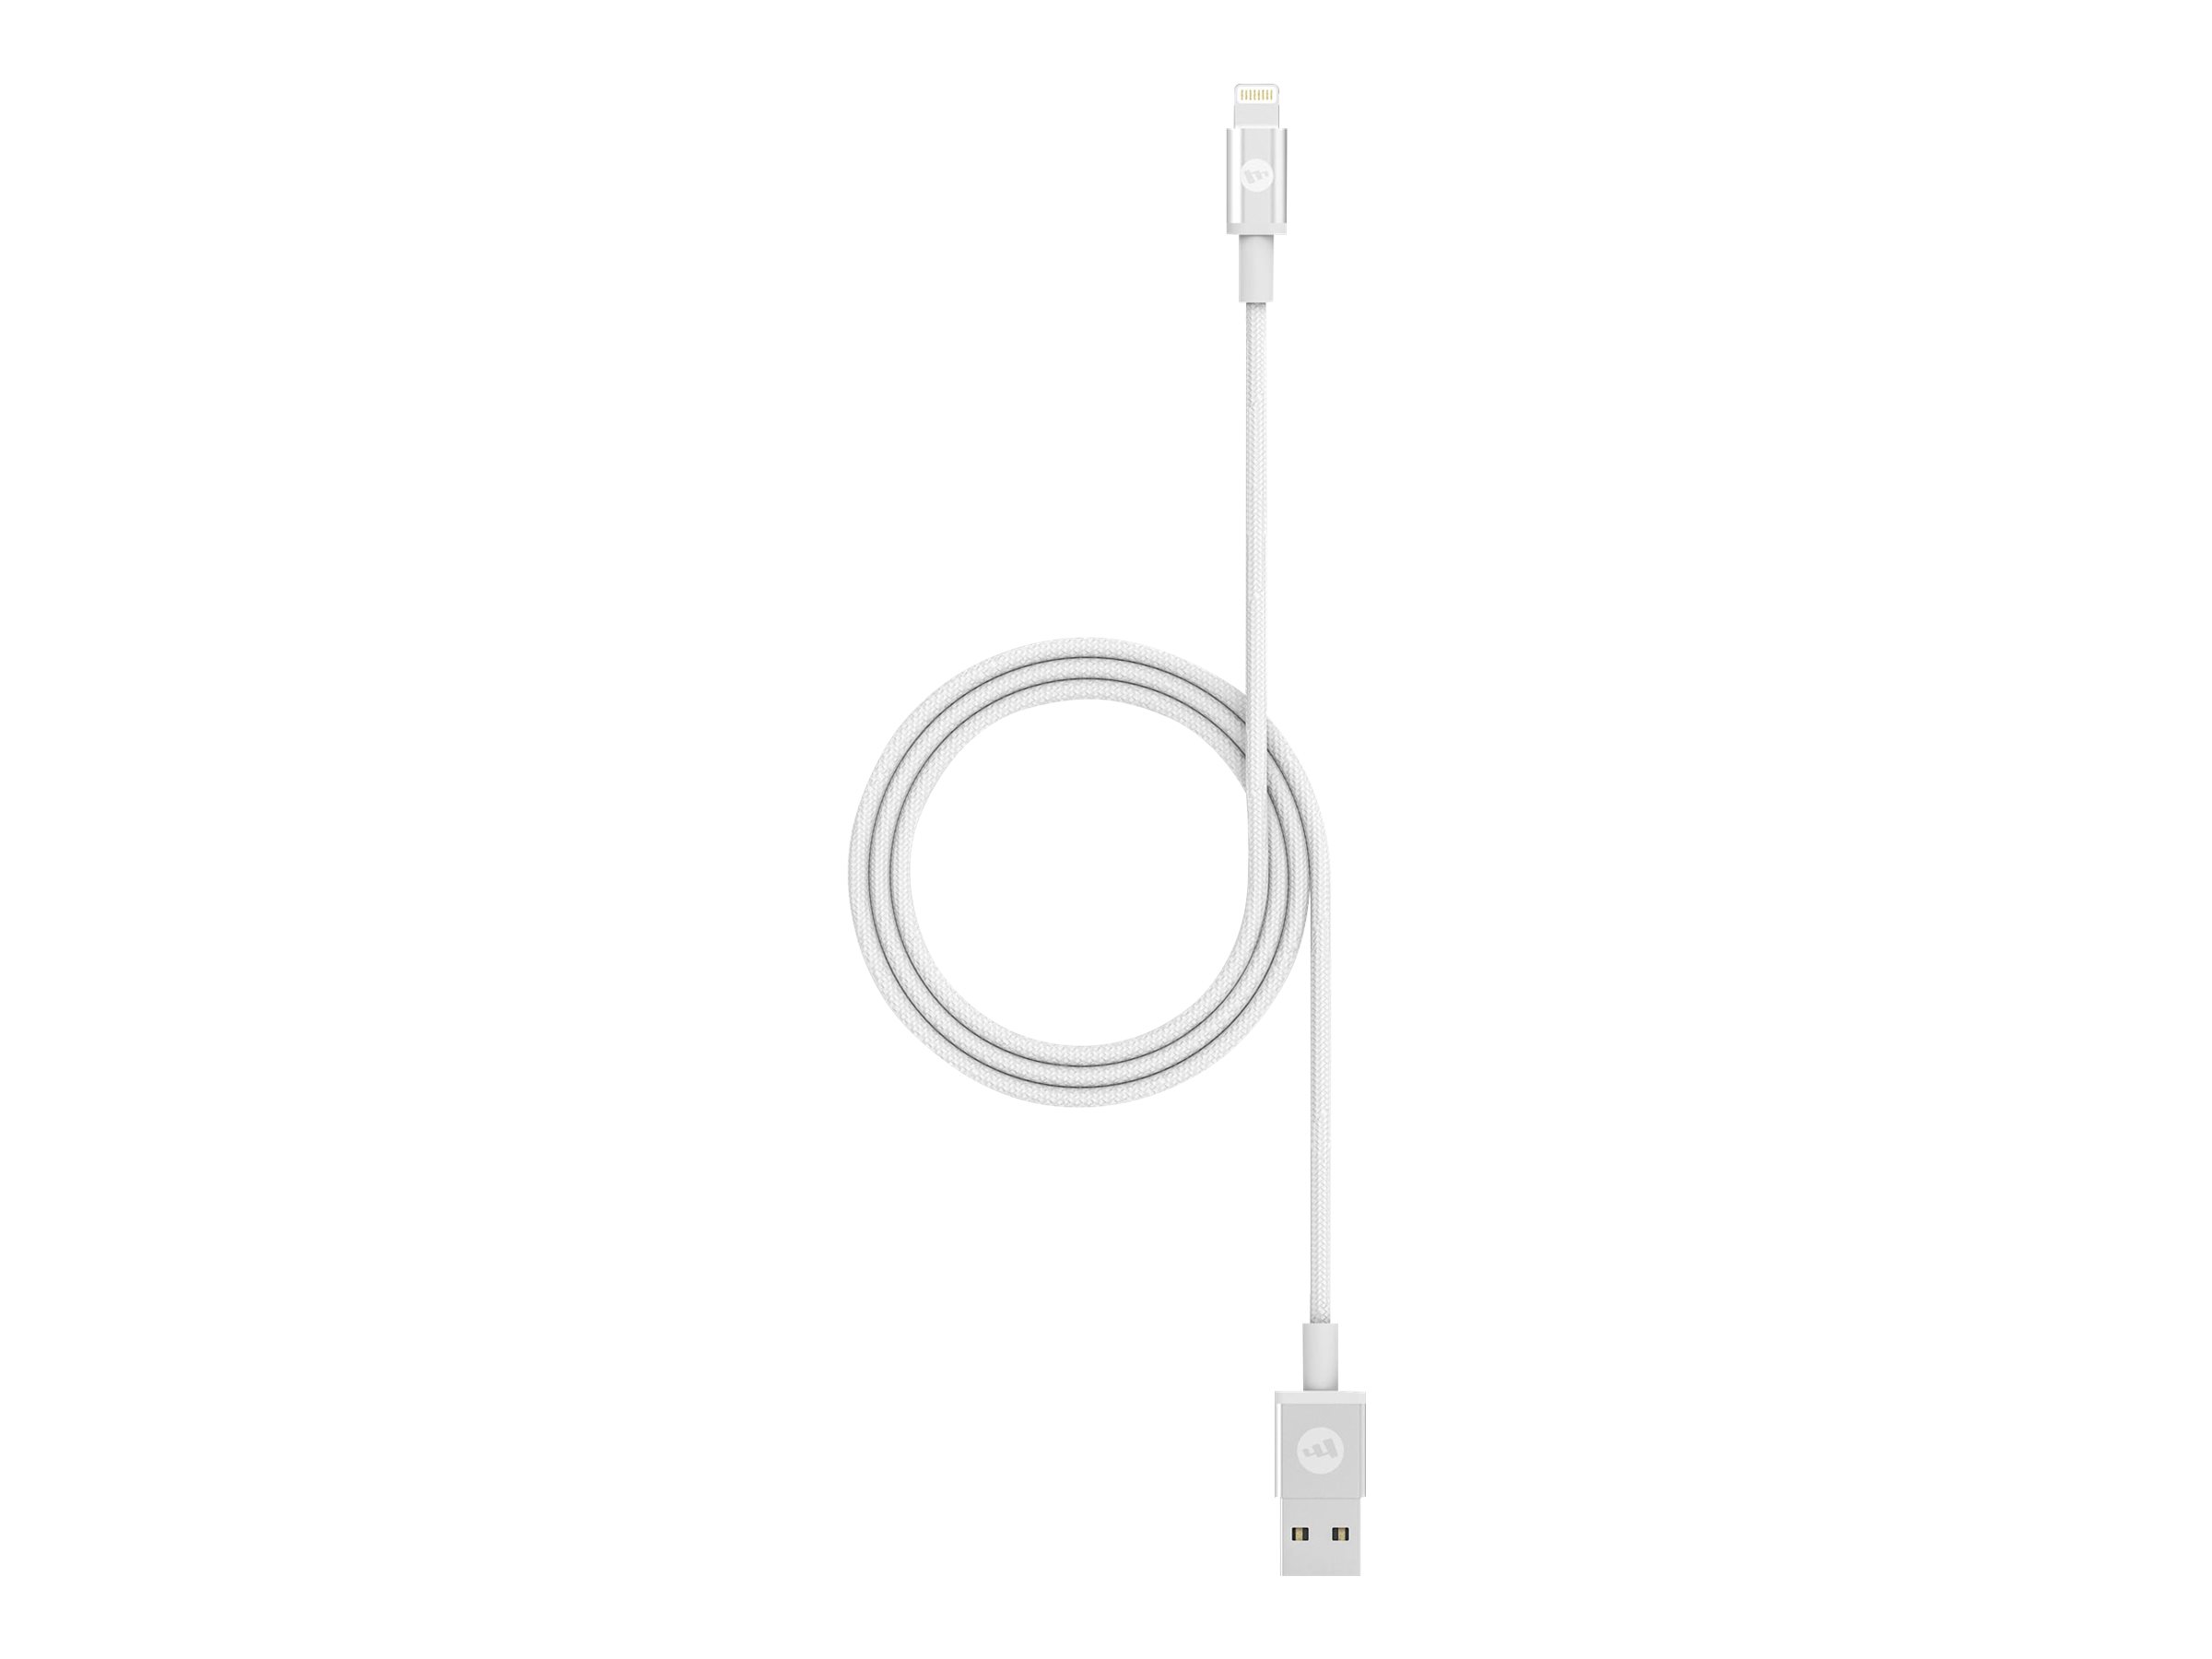 ZAGG mophie - Lightning-Kabel - Lightning männlich zu USB männlich - 1 m - weiß - für Apple iPad/iPhone/iPod (Lightning)